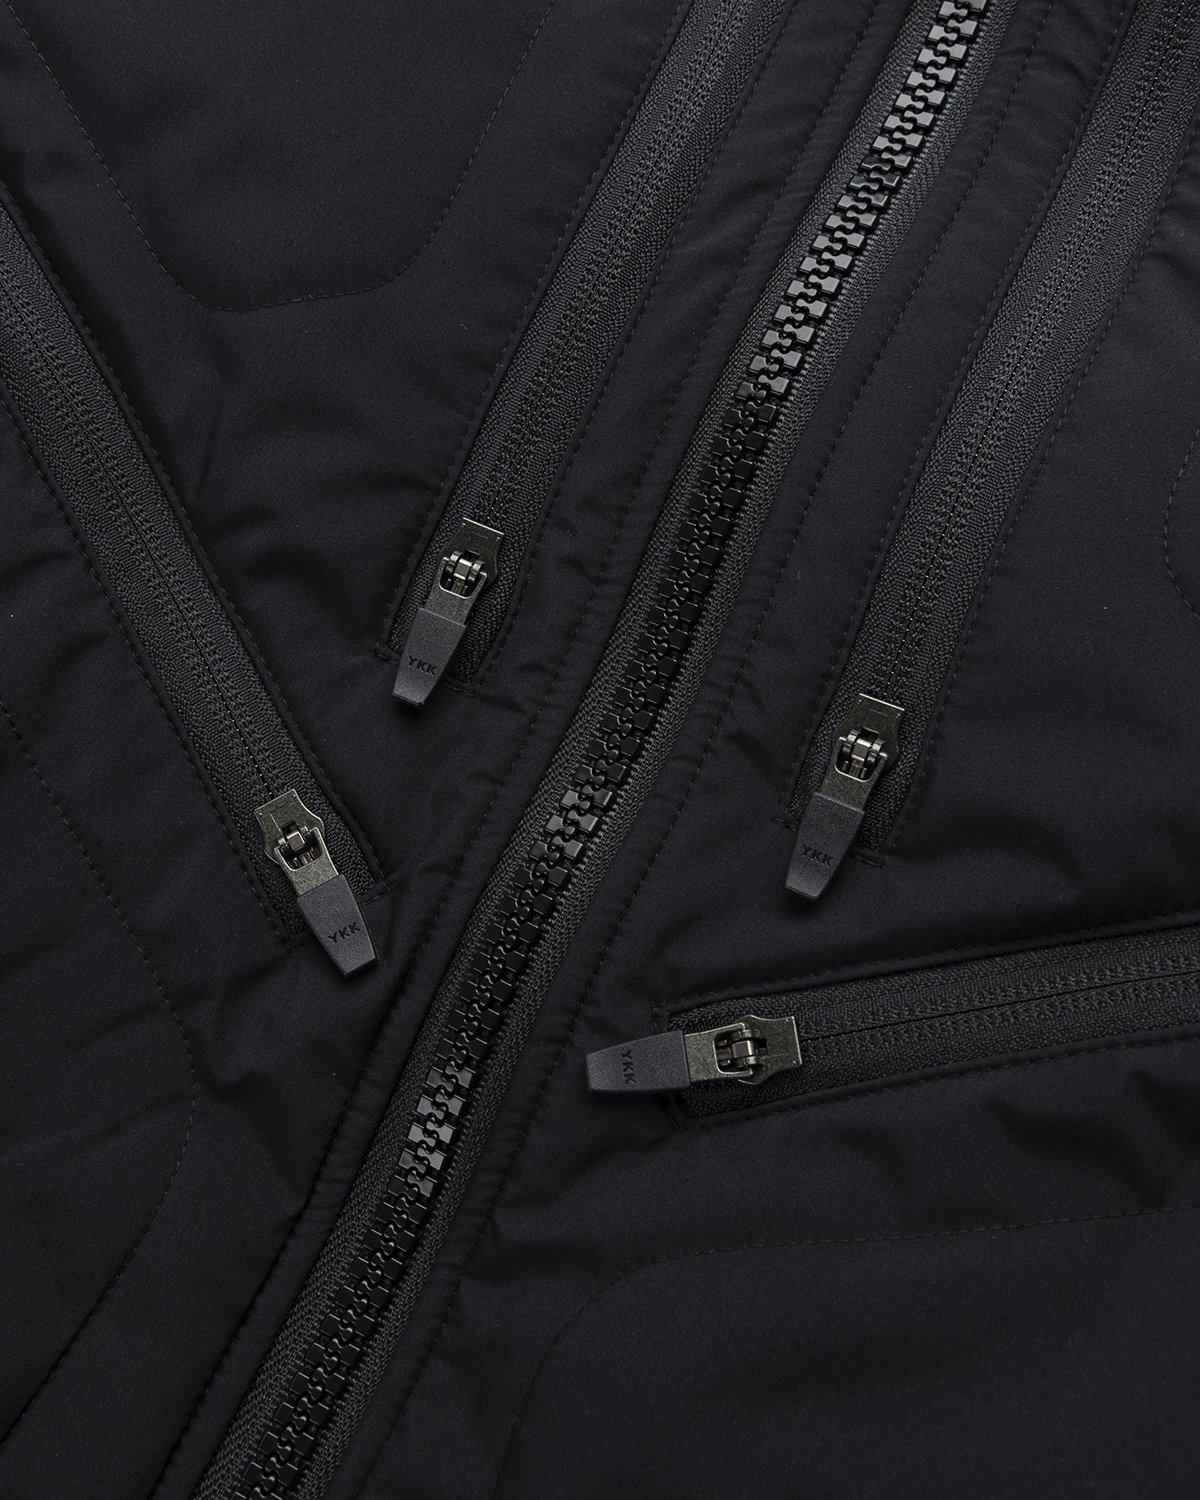 ACRONYM - J91-WS Jacket Black - Clothing - Black - Image 3